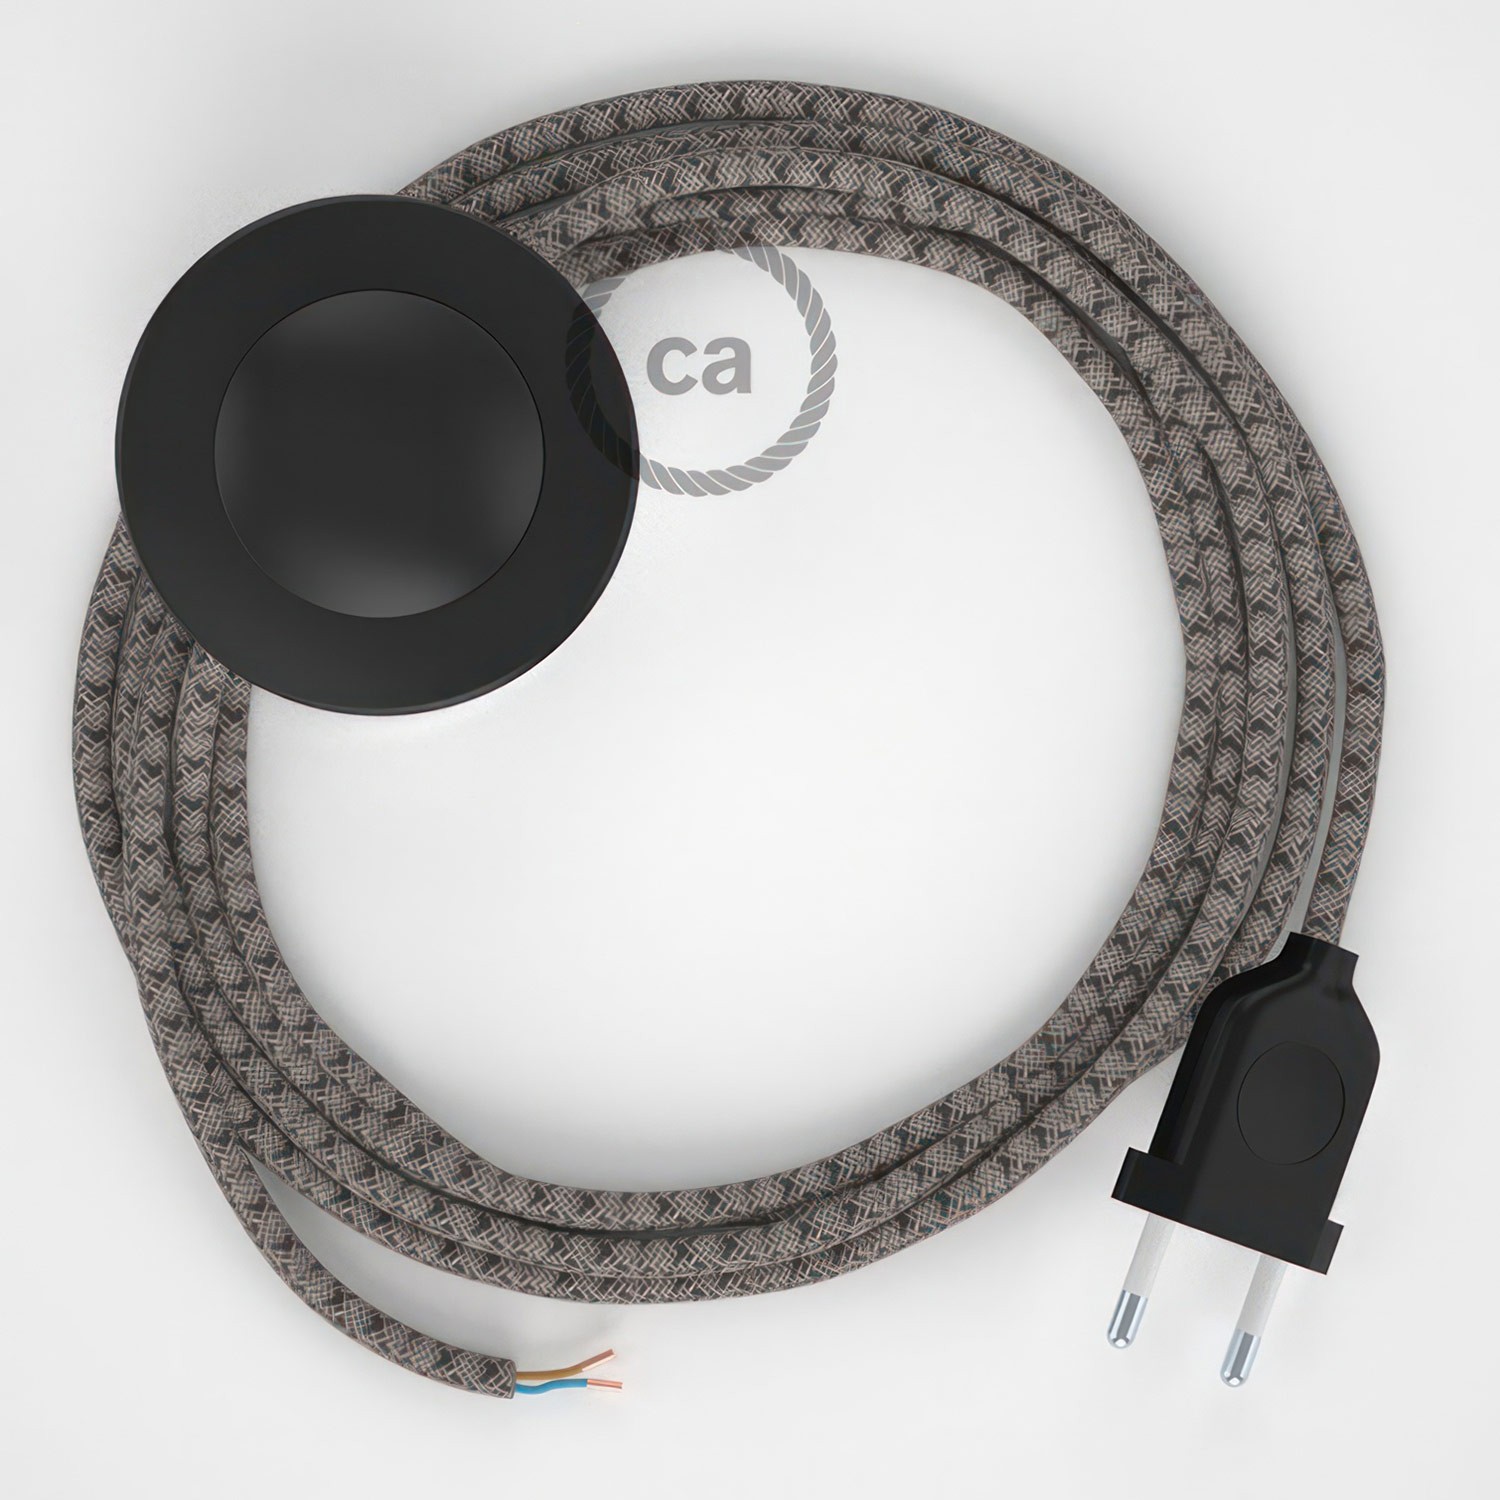 Cableado para lámpara de pie, cable RD64 Rombo Antracita 3 m. Elige tu el color de la clavija y del interruptor!